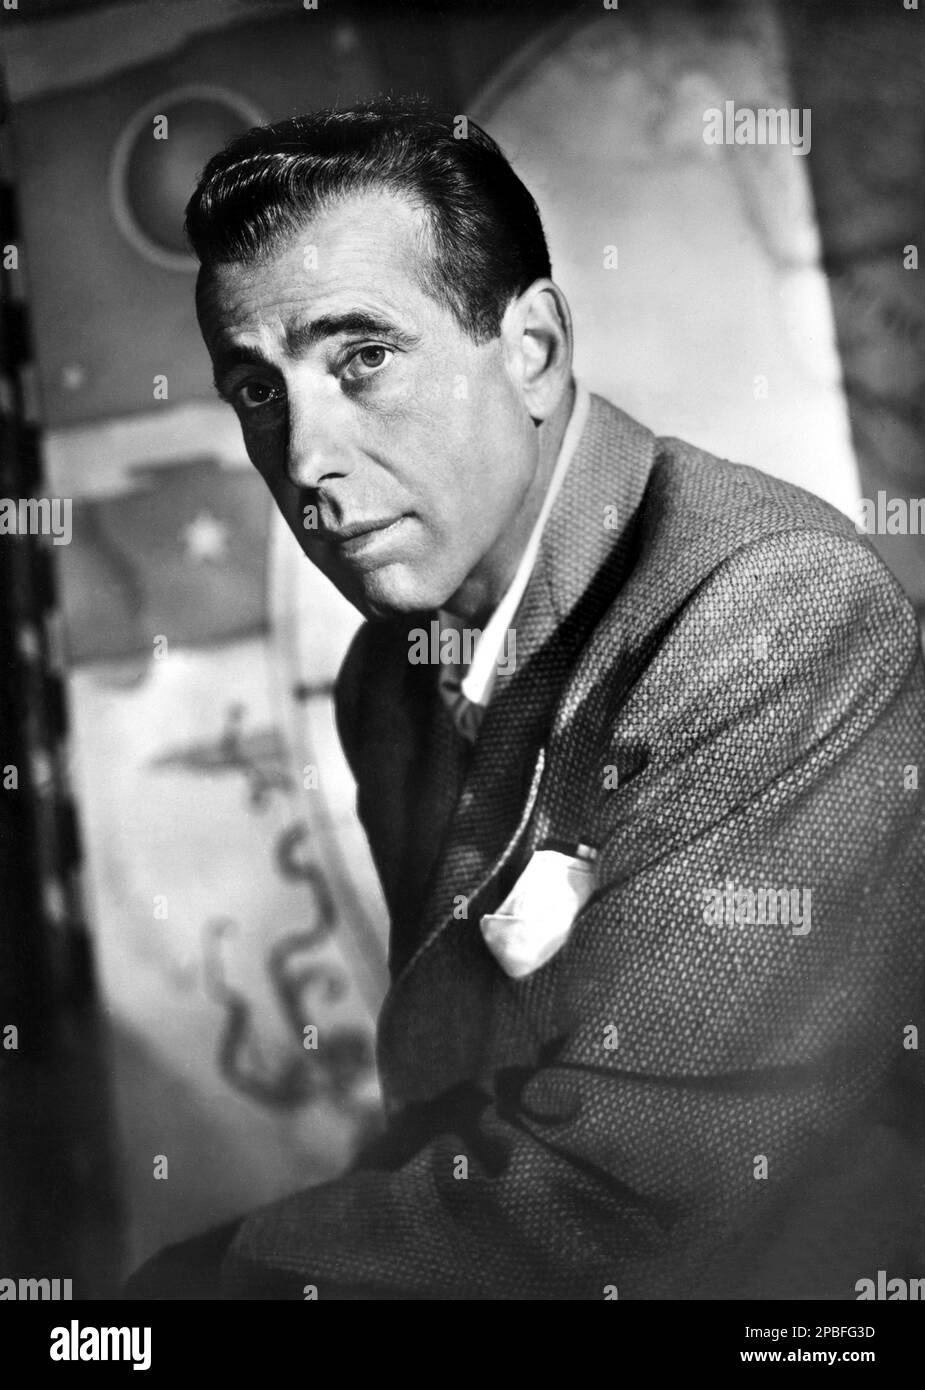 1953 ca: Le célèbre acteur de cinéma HUMPHREY BOGART ( 1899 - 1957 ) - CINÉMA - ATTORE CINEMATOGRAFICO - fazzoletto nel taschino - pochette ---- NON DESTINÉ À LA PUBLICITÉ --- NON PER USO PUBBLICITARIO --- ---- Archivio GBB Banque D'Images